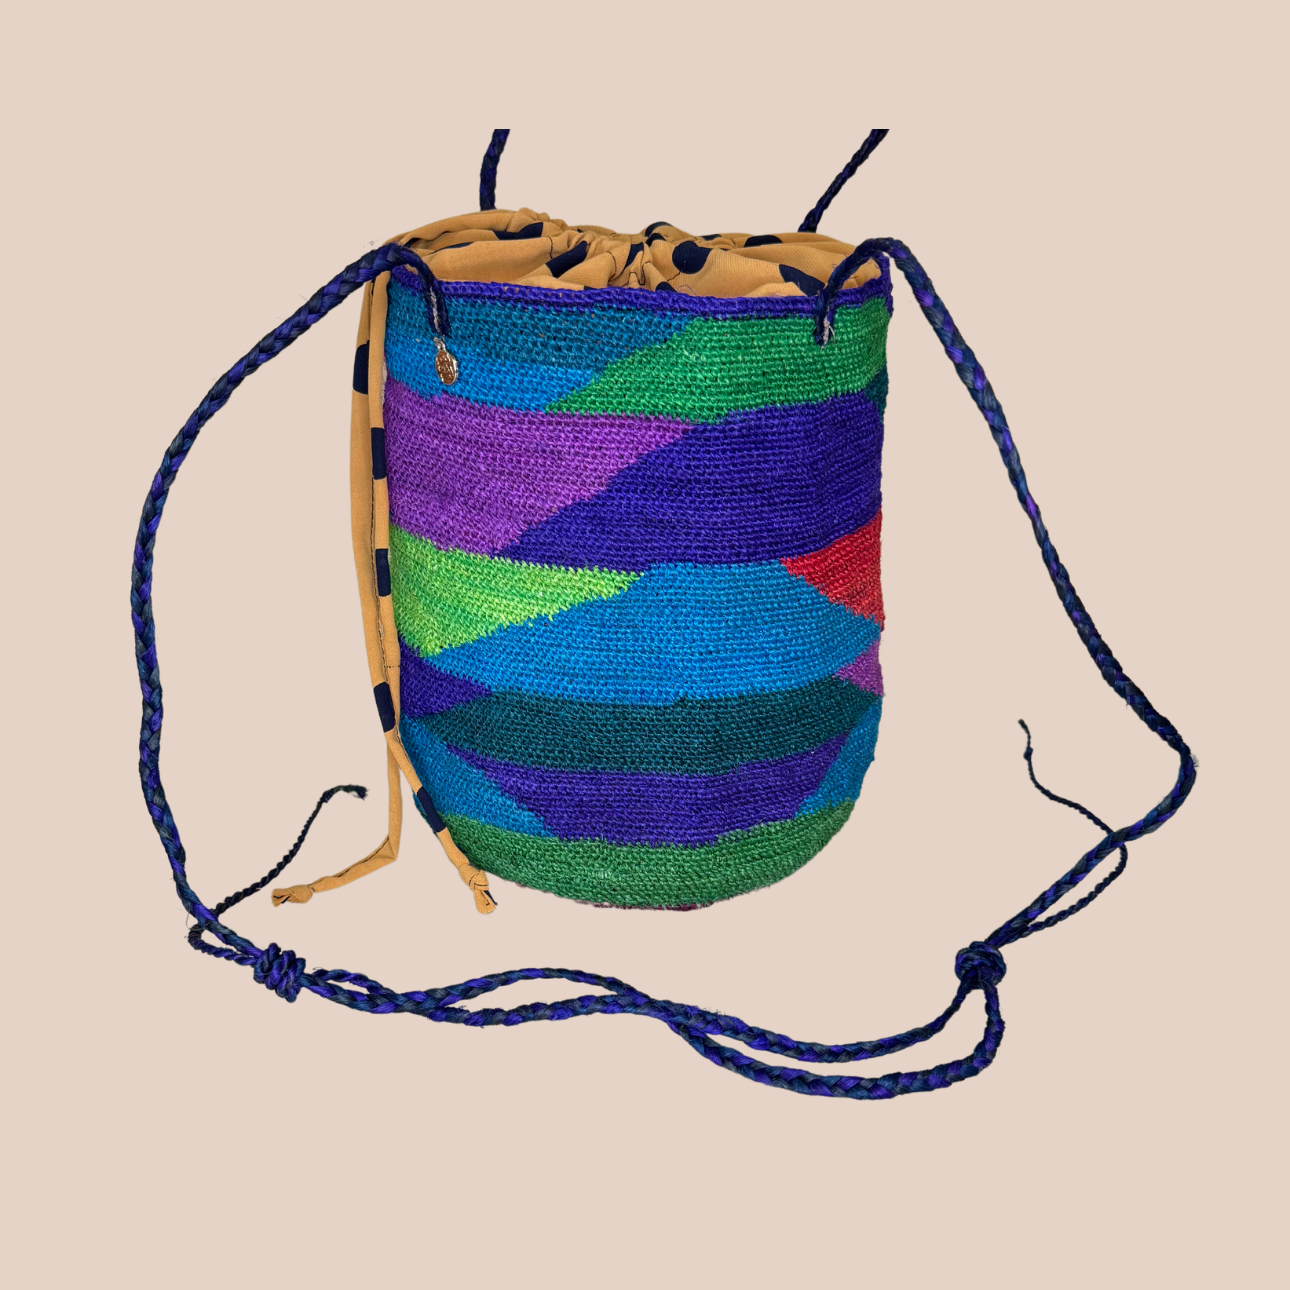  Image du sac GUAPITA doublure marron pois noirs de Maison Badigo, sac en fibres de cactus multicolore unique et tendance